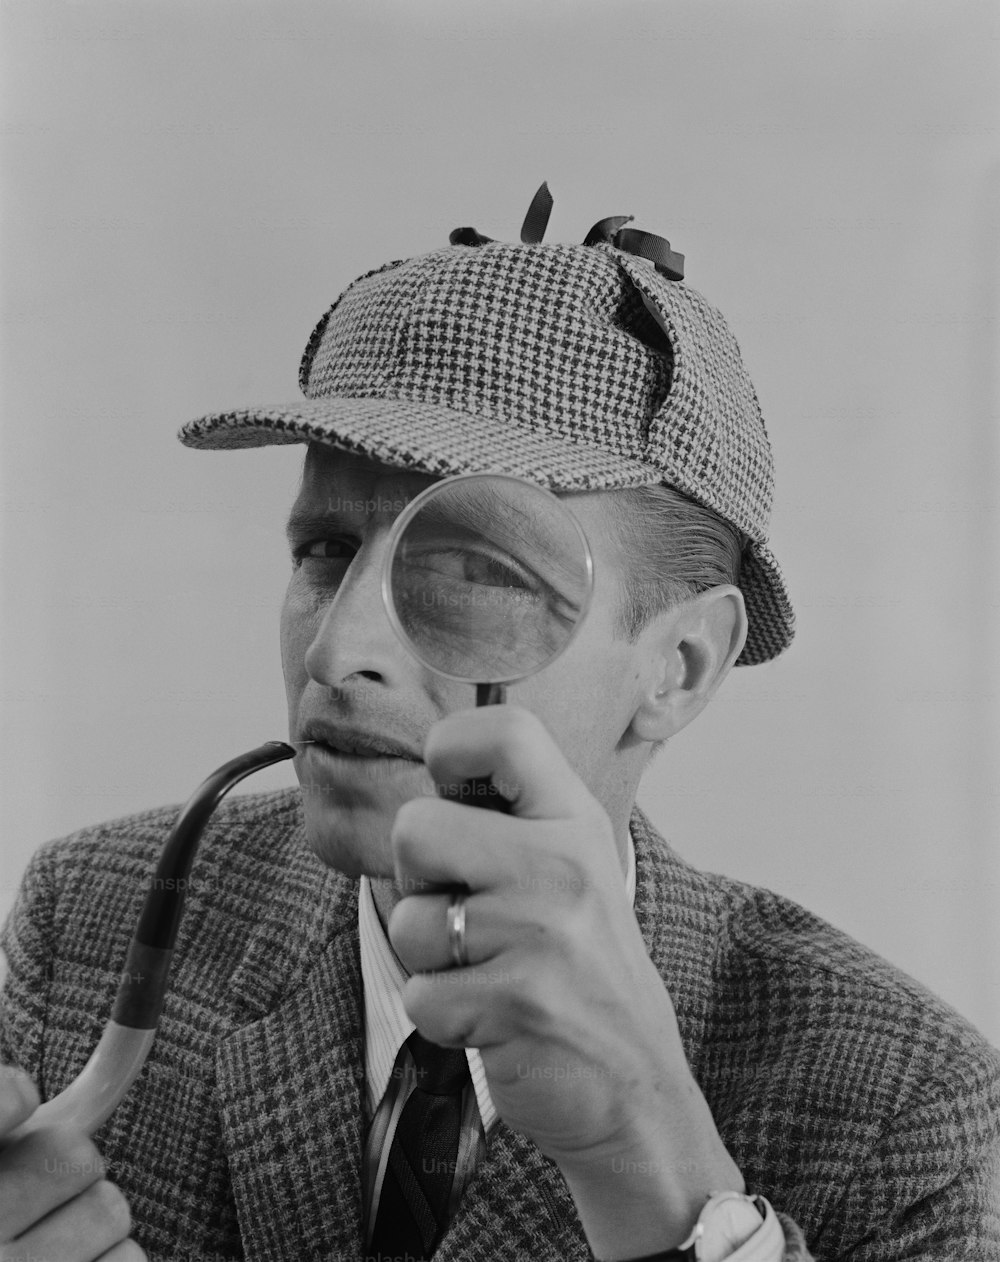 un hombre con sombrero y sosteniendo una lupa